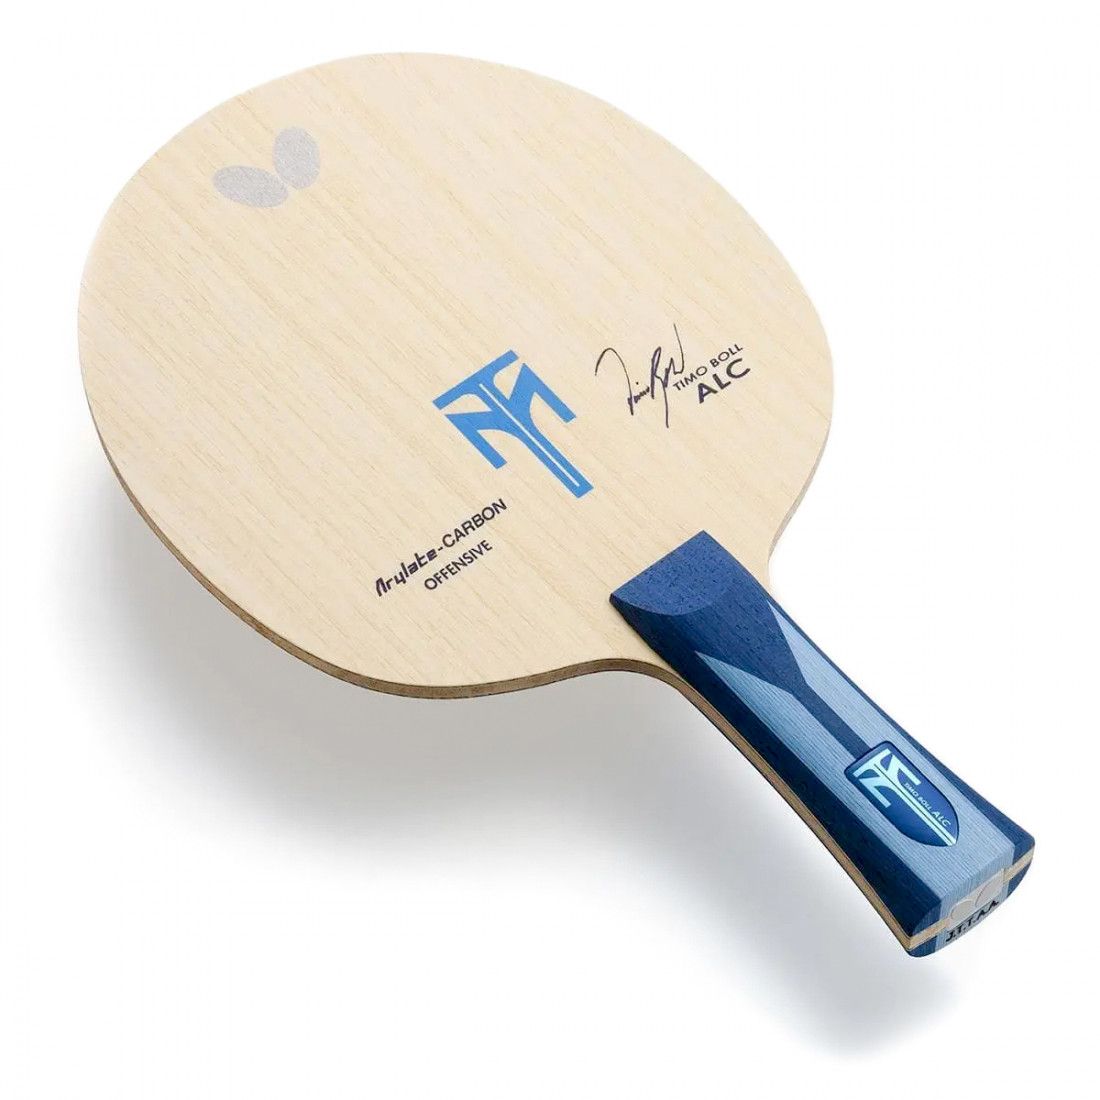 Основание ракетки для настольного тенниса Butterfly Timo Boll ALC бежевое-голубое